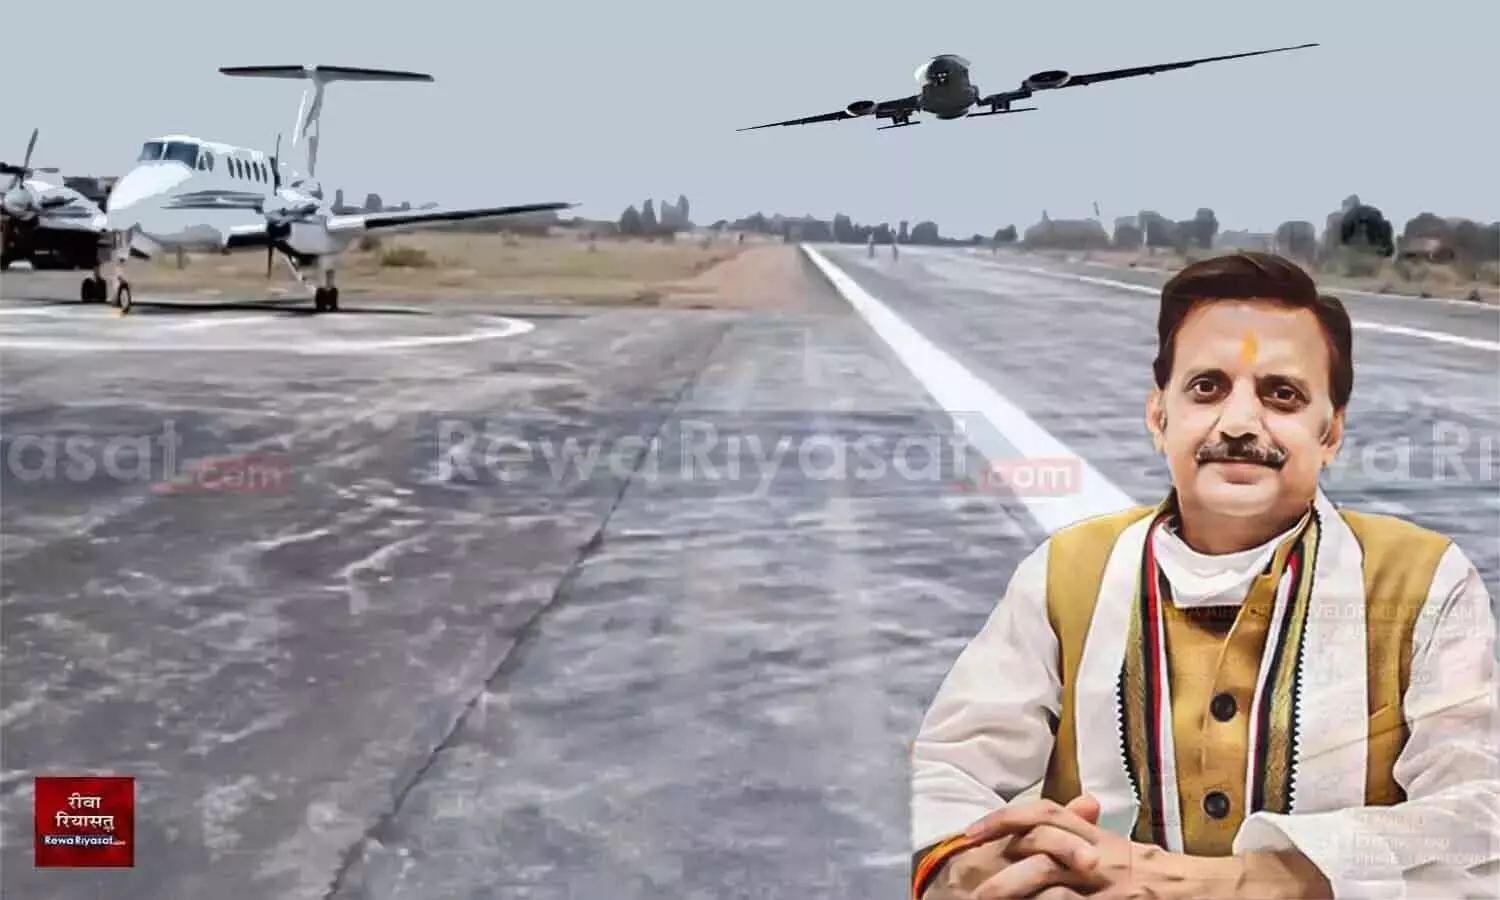 Rewa Airport: अगले हफ्ते होगा रीवा एयरपोर्ट का भूमिपूजन, सीएम शिवराज और उड्डयन मंत्री सिंधिया आएंगे